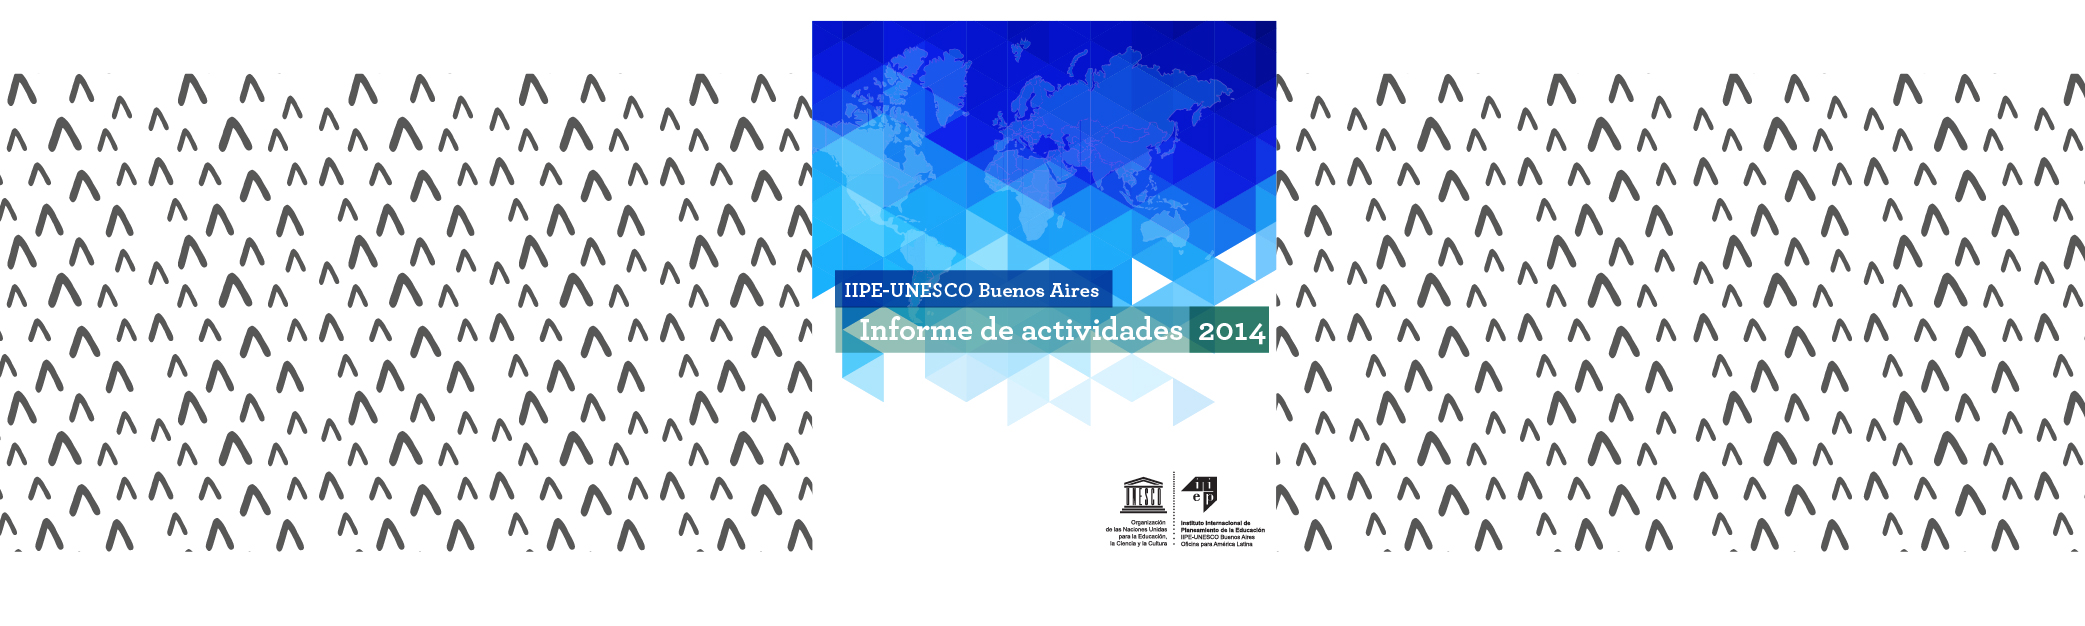 Informe de actividades 2014-2015